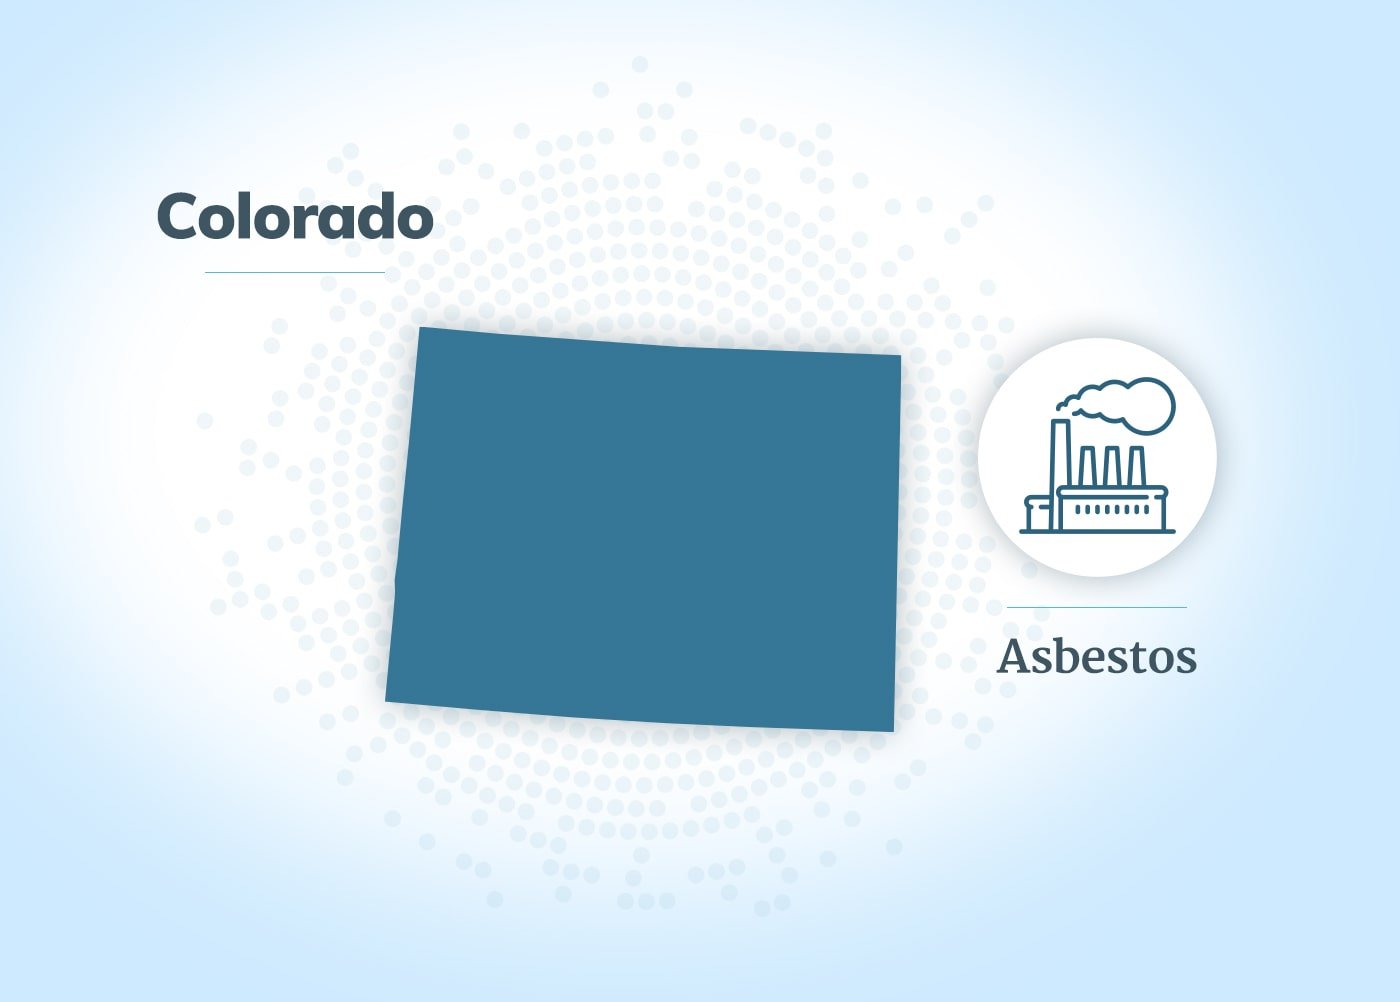 Asbestos exposure in Colorado